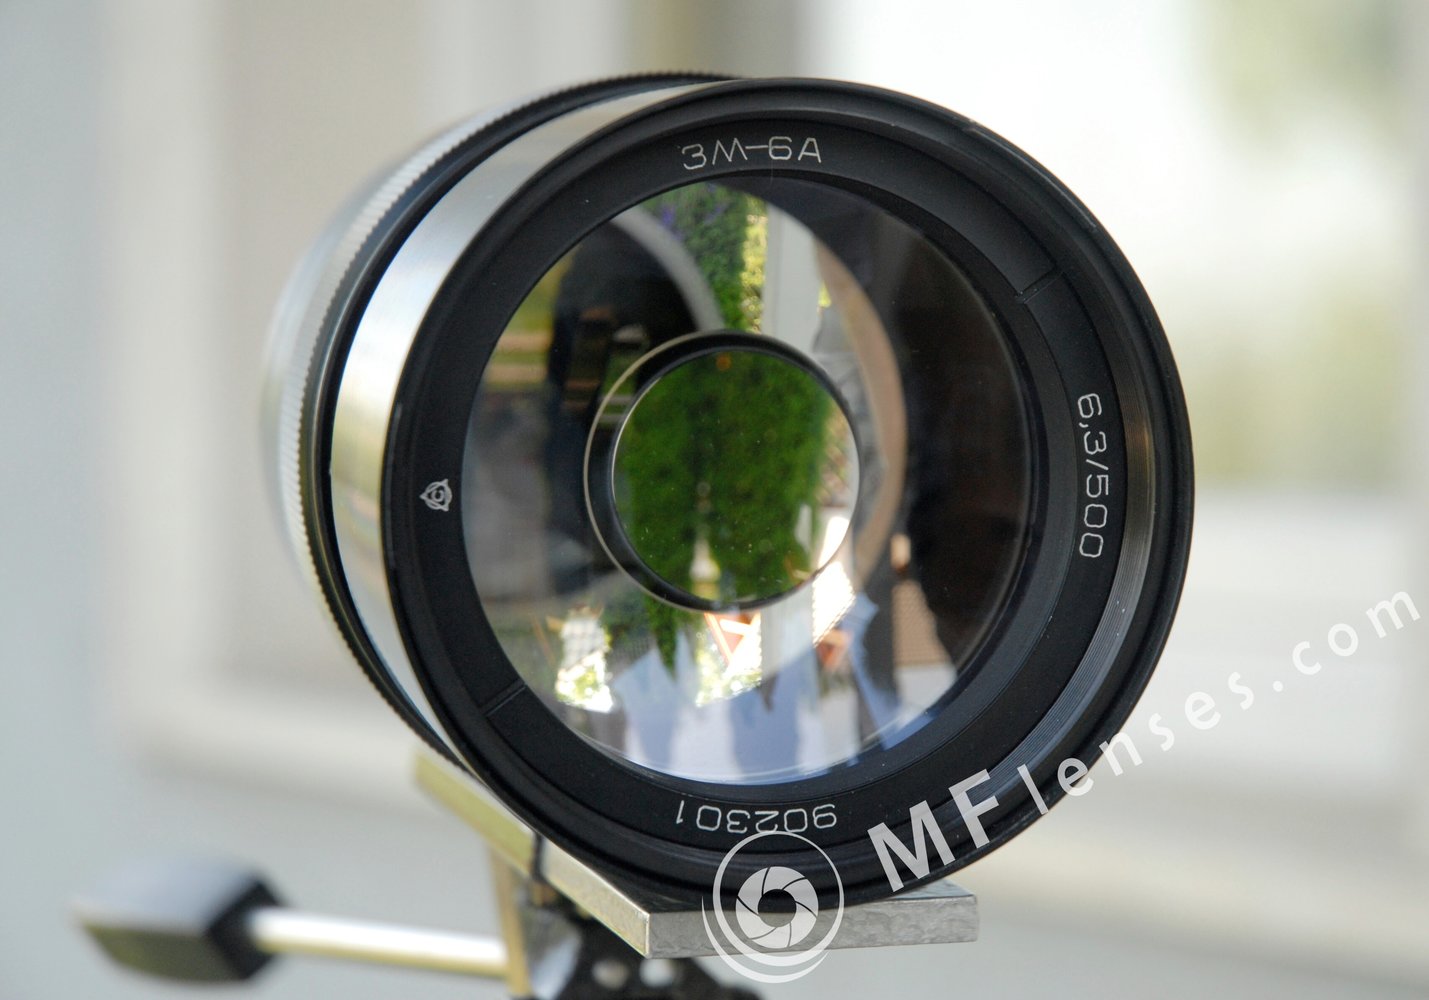 3M-6A 500mm f/6.3 Maksutov mirror lens-2141